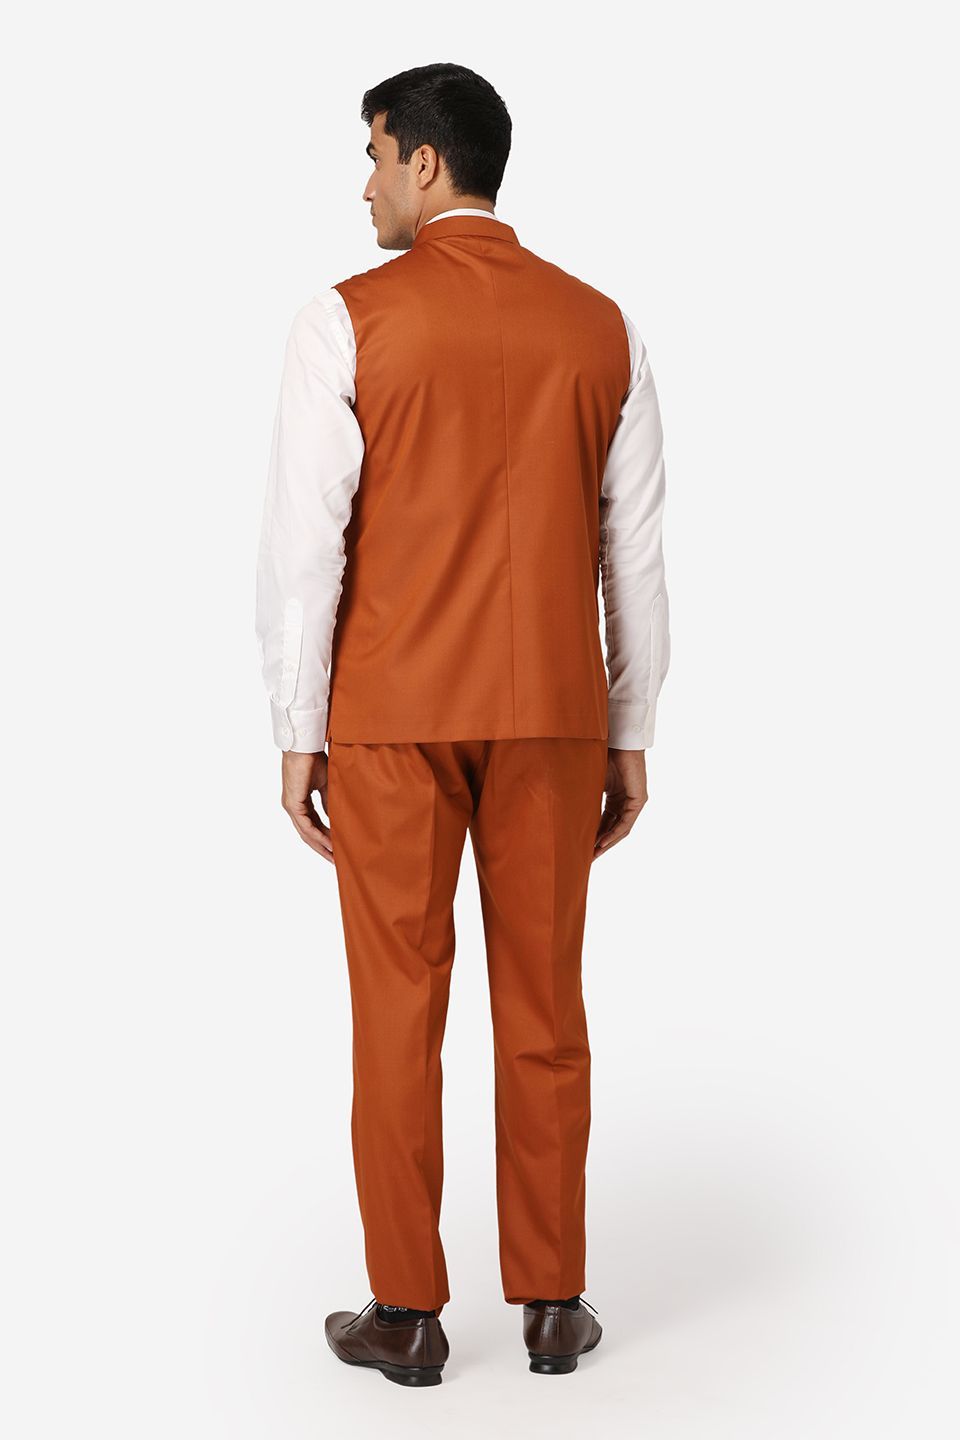 WINTAGE Men's Poly Cotton Casual and Evening Vest & Pant Set : Orange